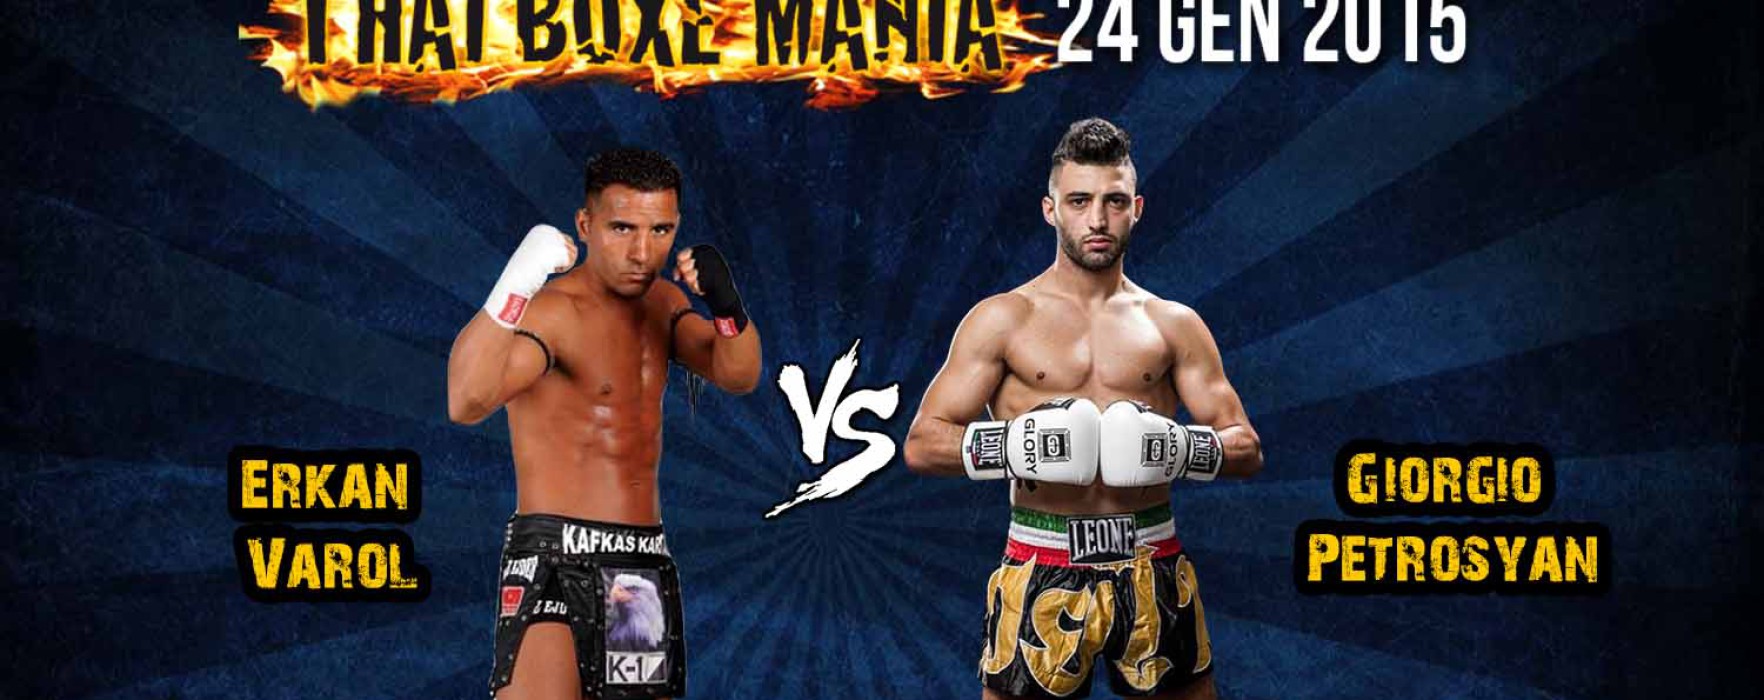 Card: Giorgio Petrosyan vs Erkan Varol – Thai Boxe Mania 2015 – 24/1/15 – Turin, Italy